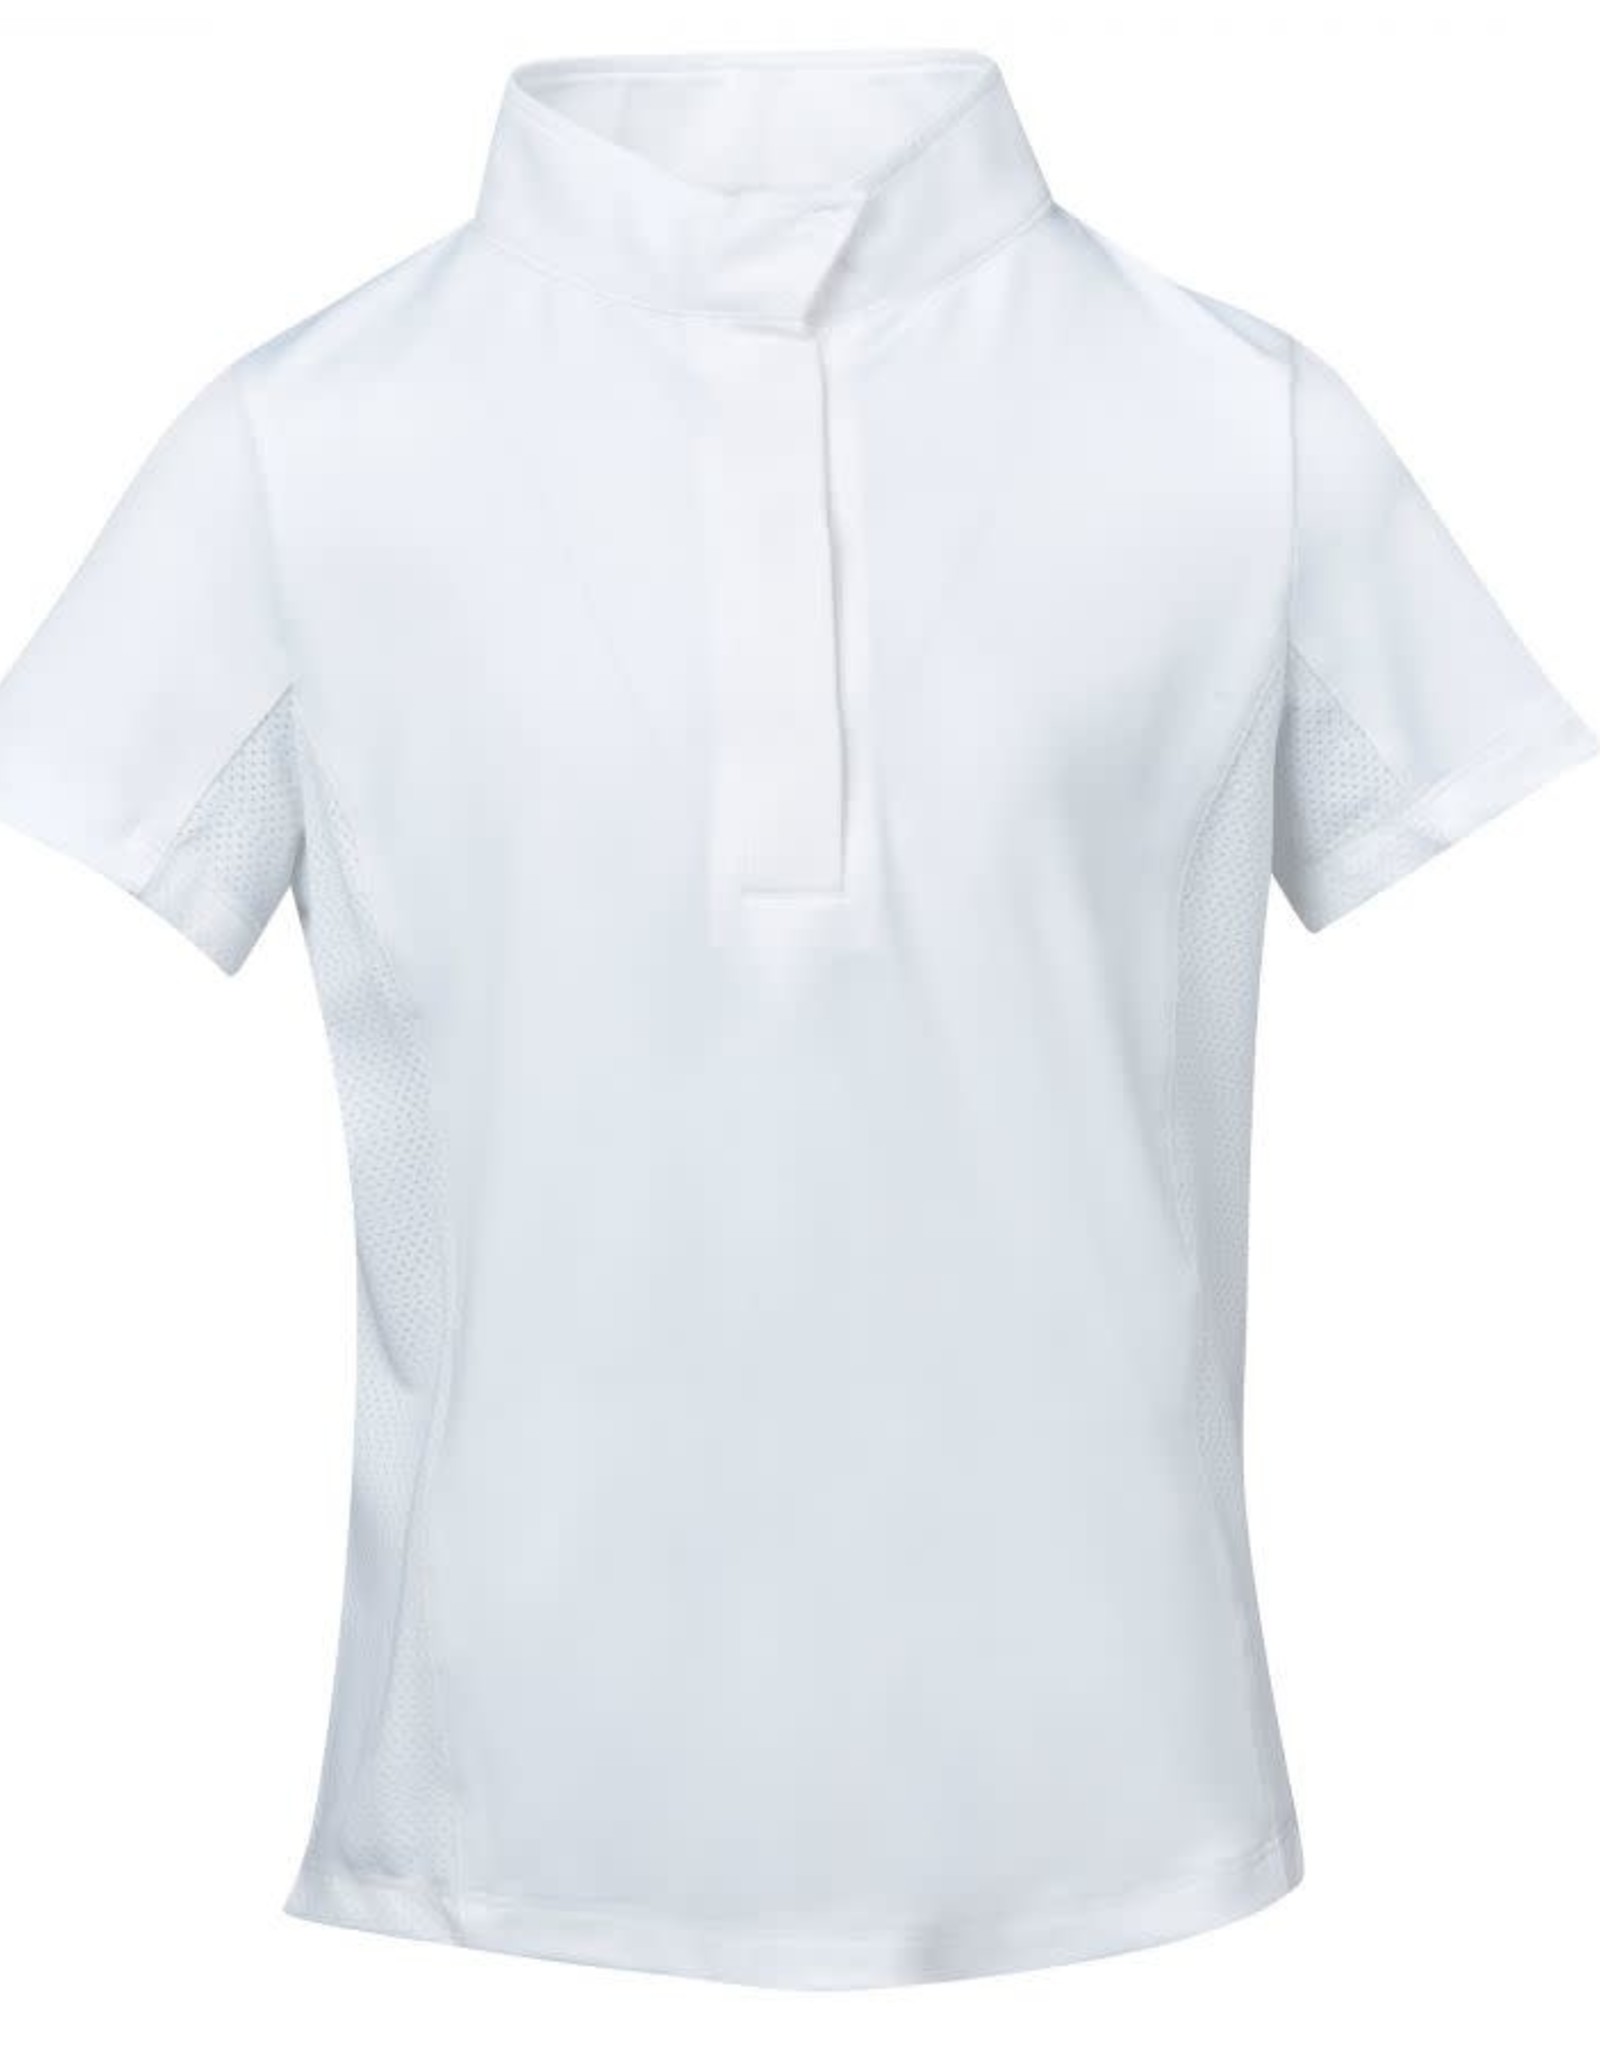 Dublin Ria Short Sleeve Completion Shirt Adult